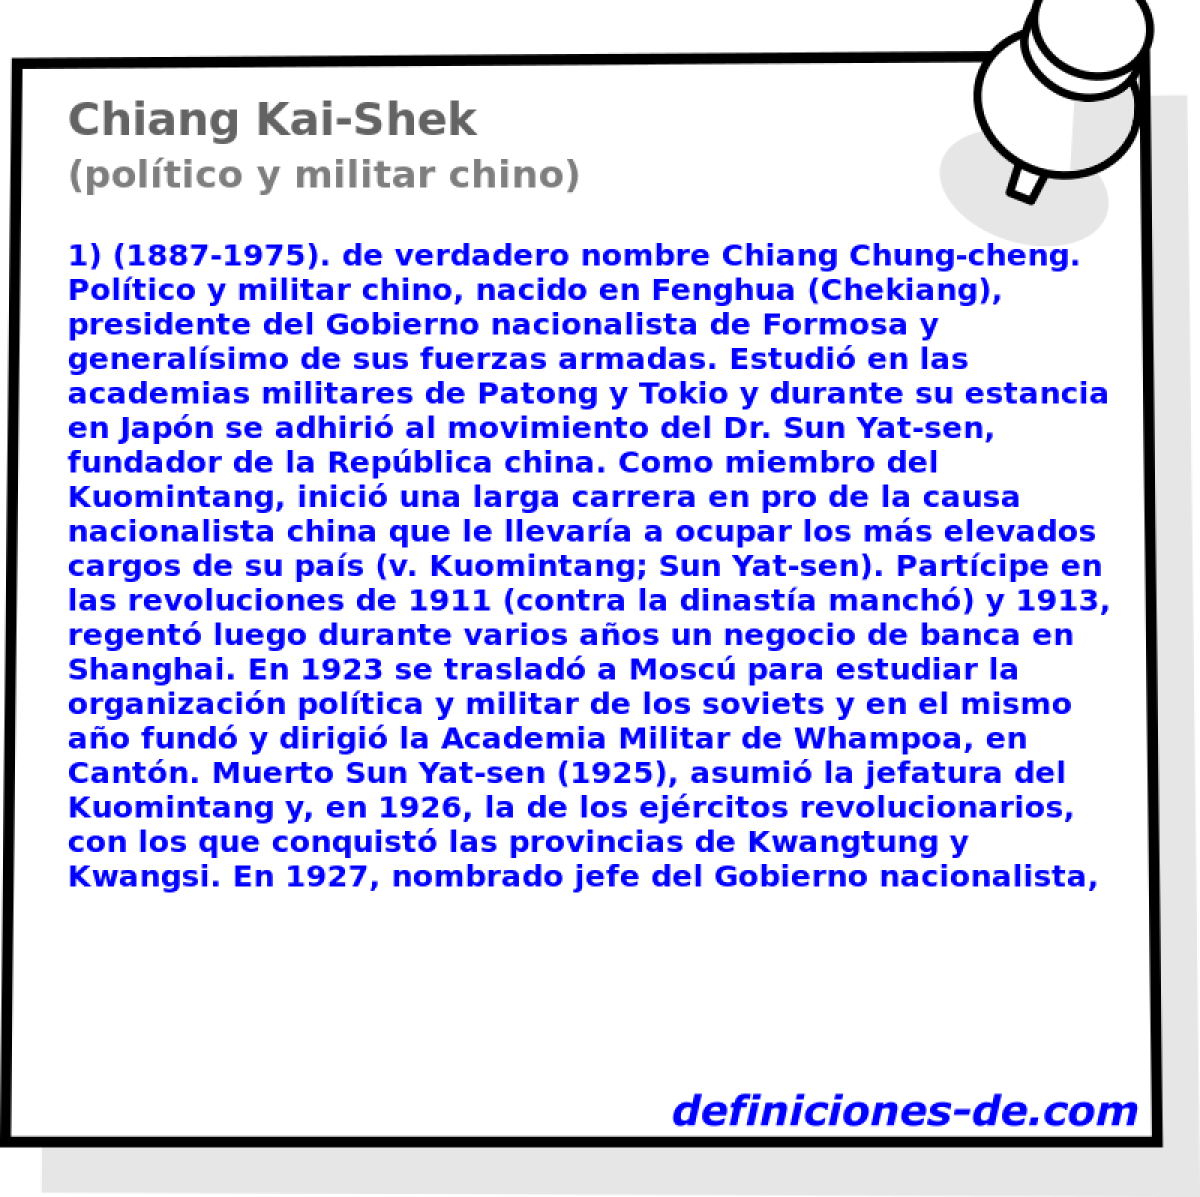 Chiang Kai-Shek (poltico y militar chino)